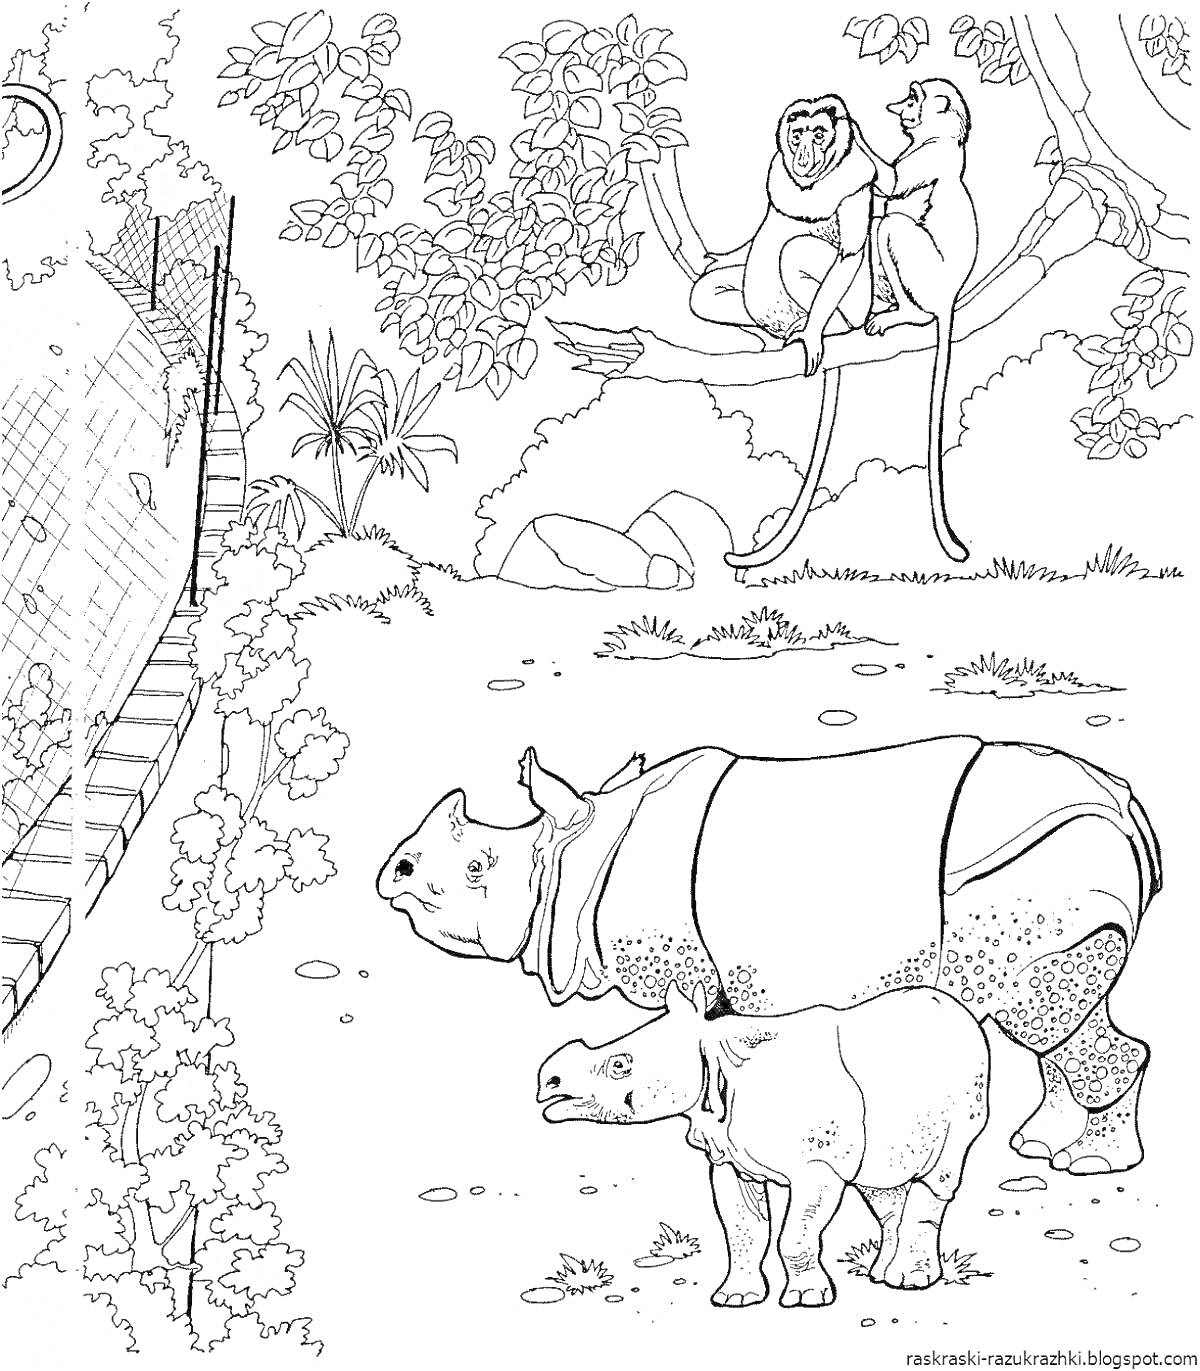 Раскраска Два носорога на переднем плане среди растительности и два примата на ветке дерева в зоопарке с вольером слева